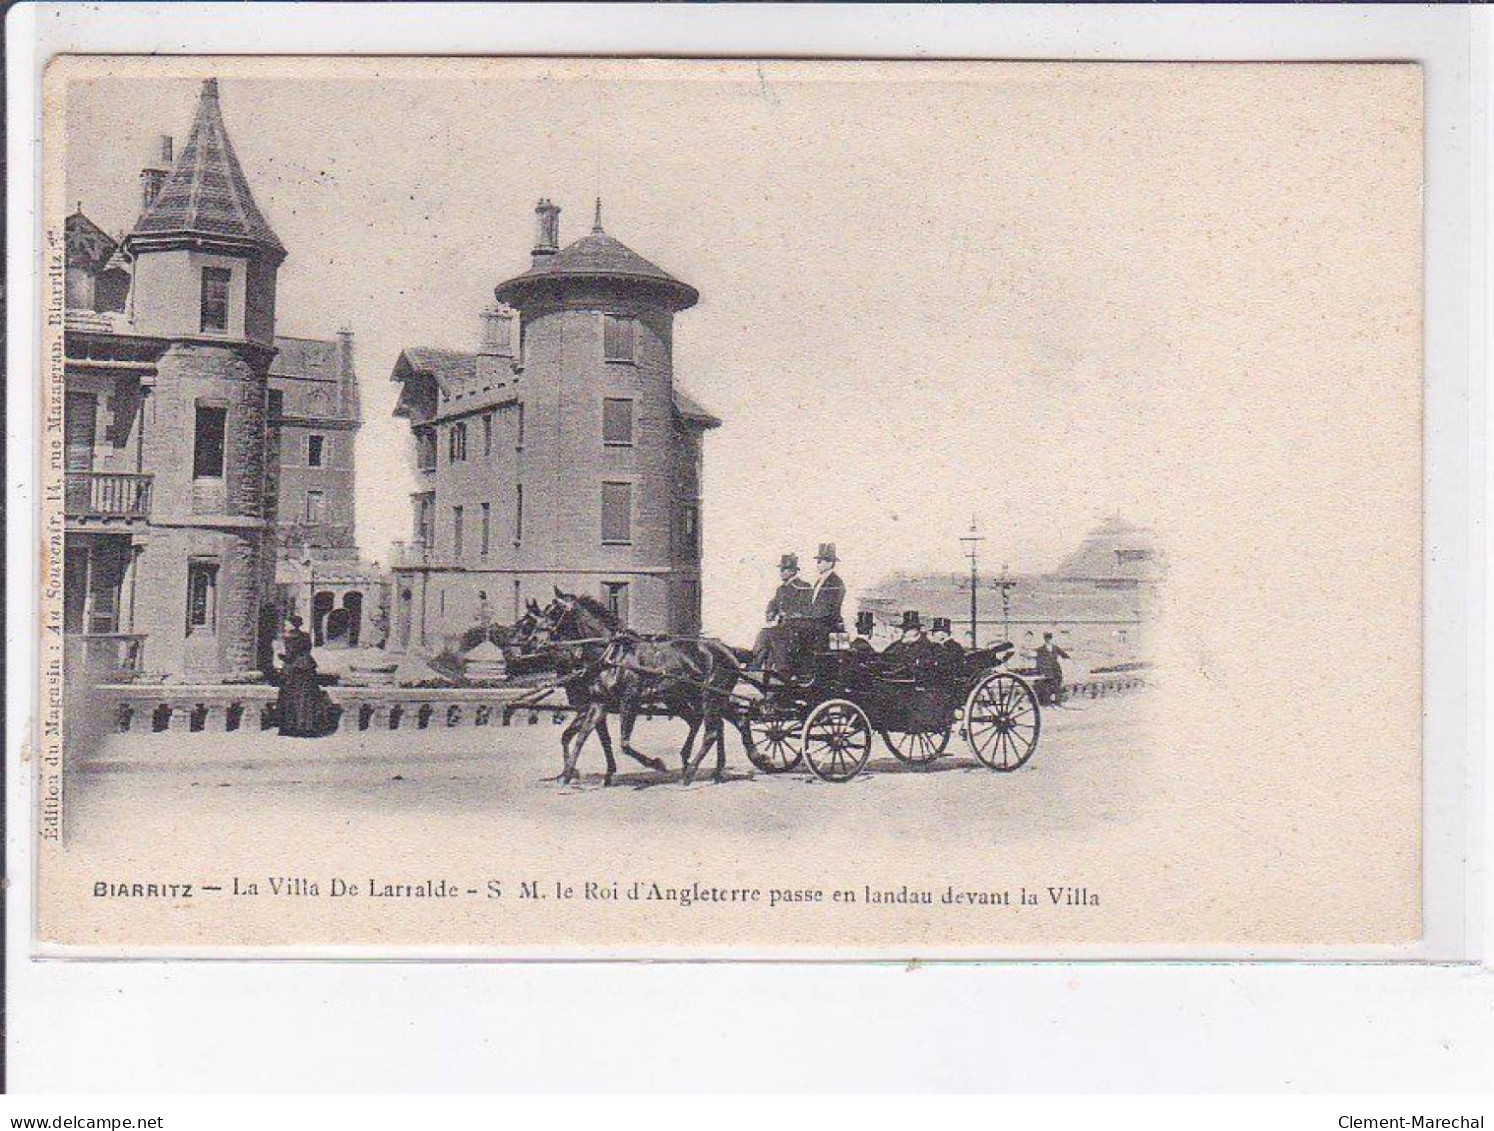 BIARRITZ: D'Edouard VII Le Roi D'angleterre La Villa De Larralde, Passe En Landau Devant La Villa - Très Bon état - Biarritz